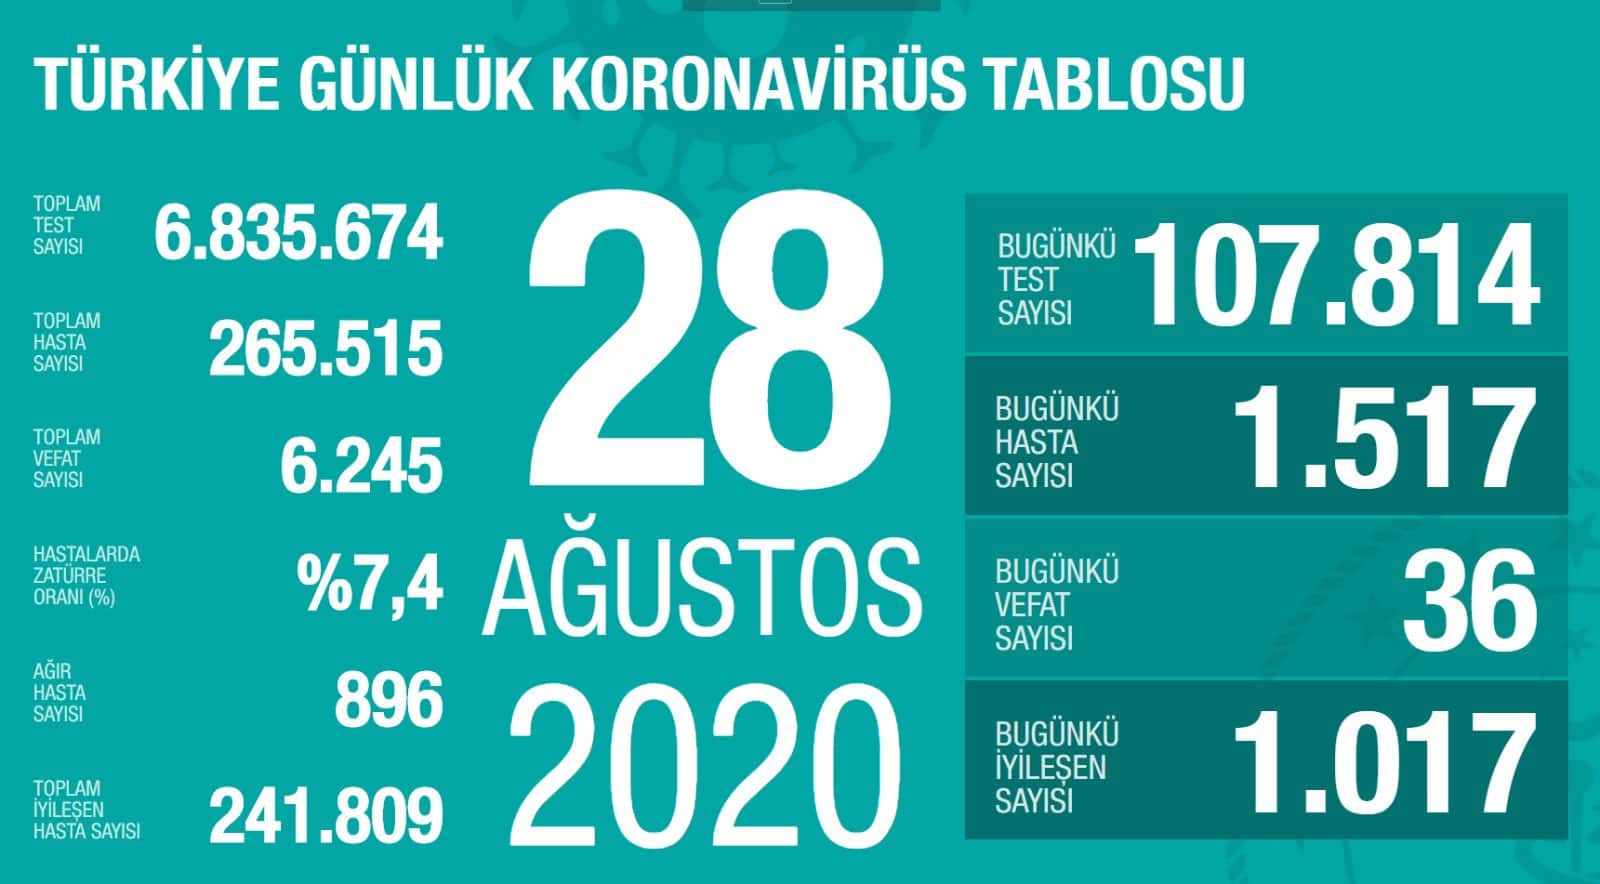 Türkiye’de 36 Kişi Daha Virüs Nedeniyle Hayatını Kaybetti!